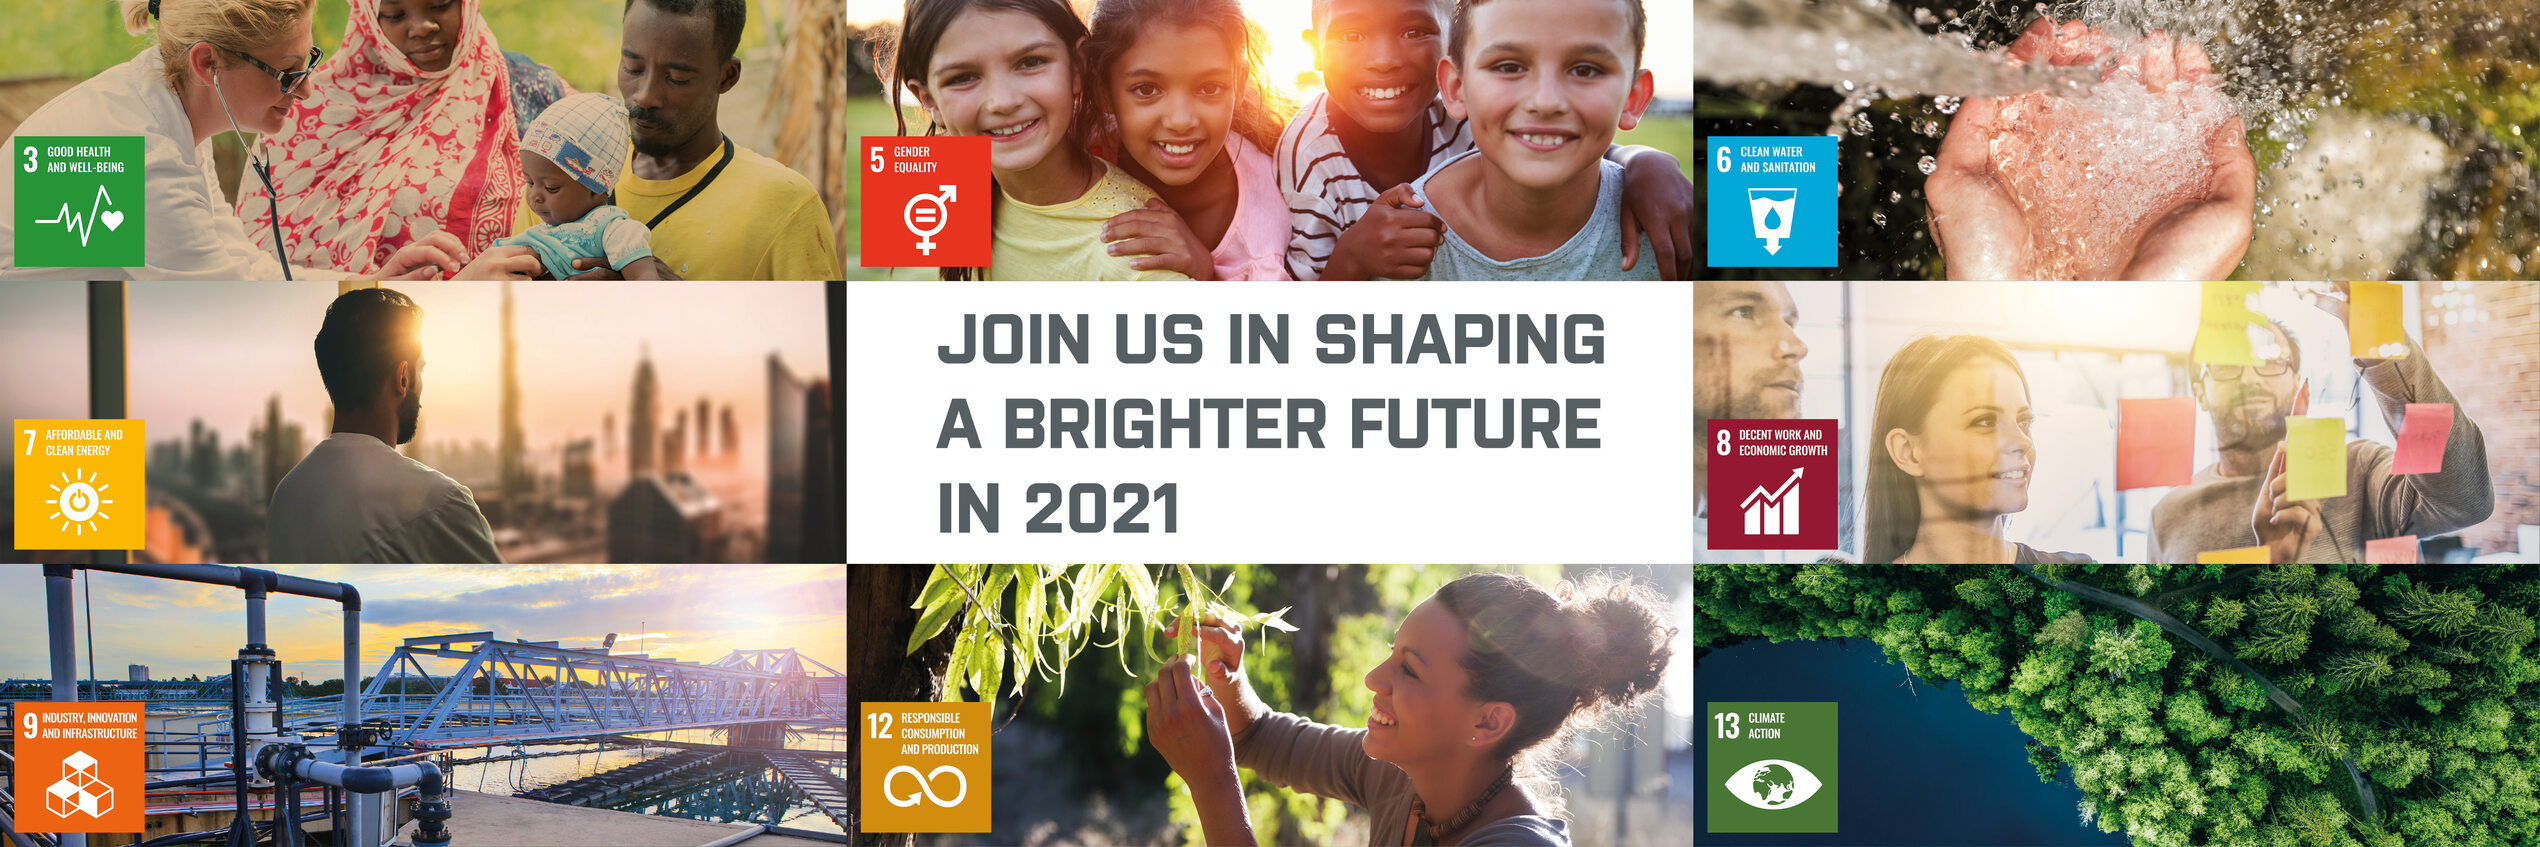 Vær med til at forme en lysere fremtid i 2021